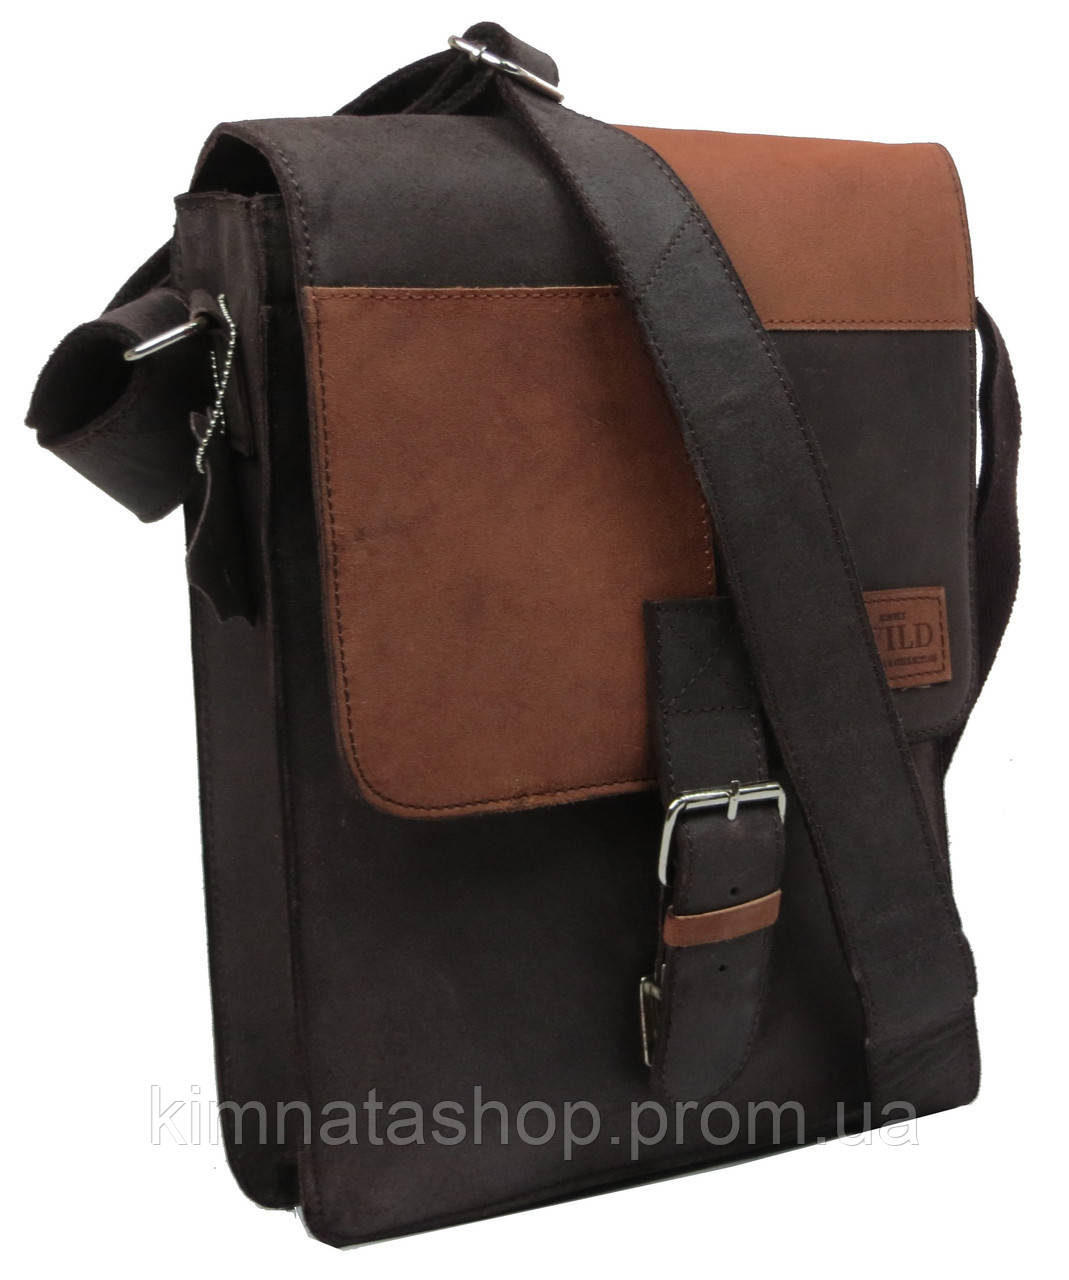 

Кожаная сумка-плантешка Always Wild NZ-721 Brown Tan коричневый, Коричнвый